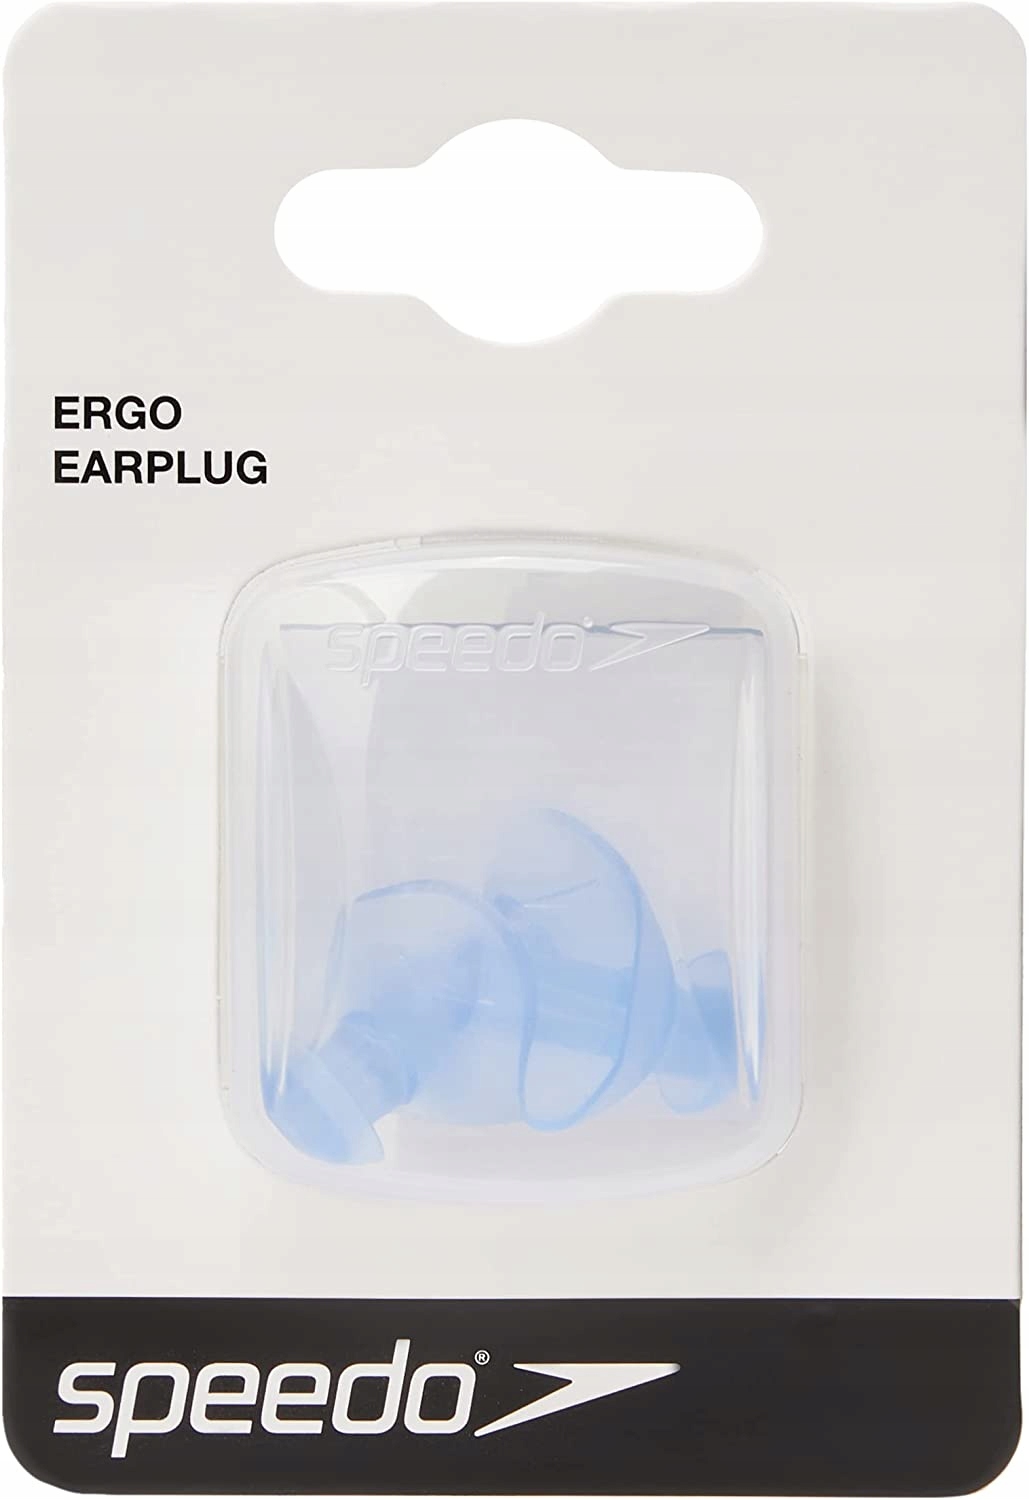 Zatyczki do ucha Speedo ERGO EarPlug (niebieskie) - 13148946892